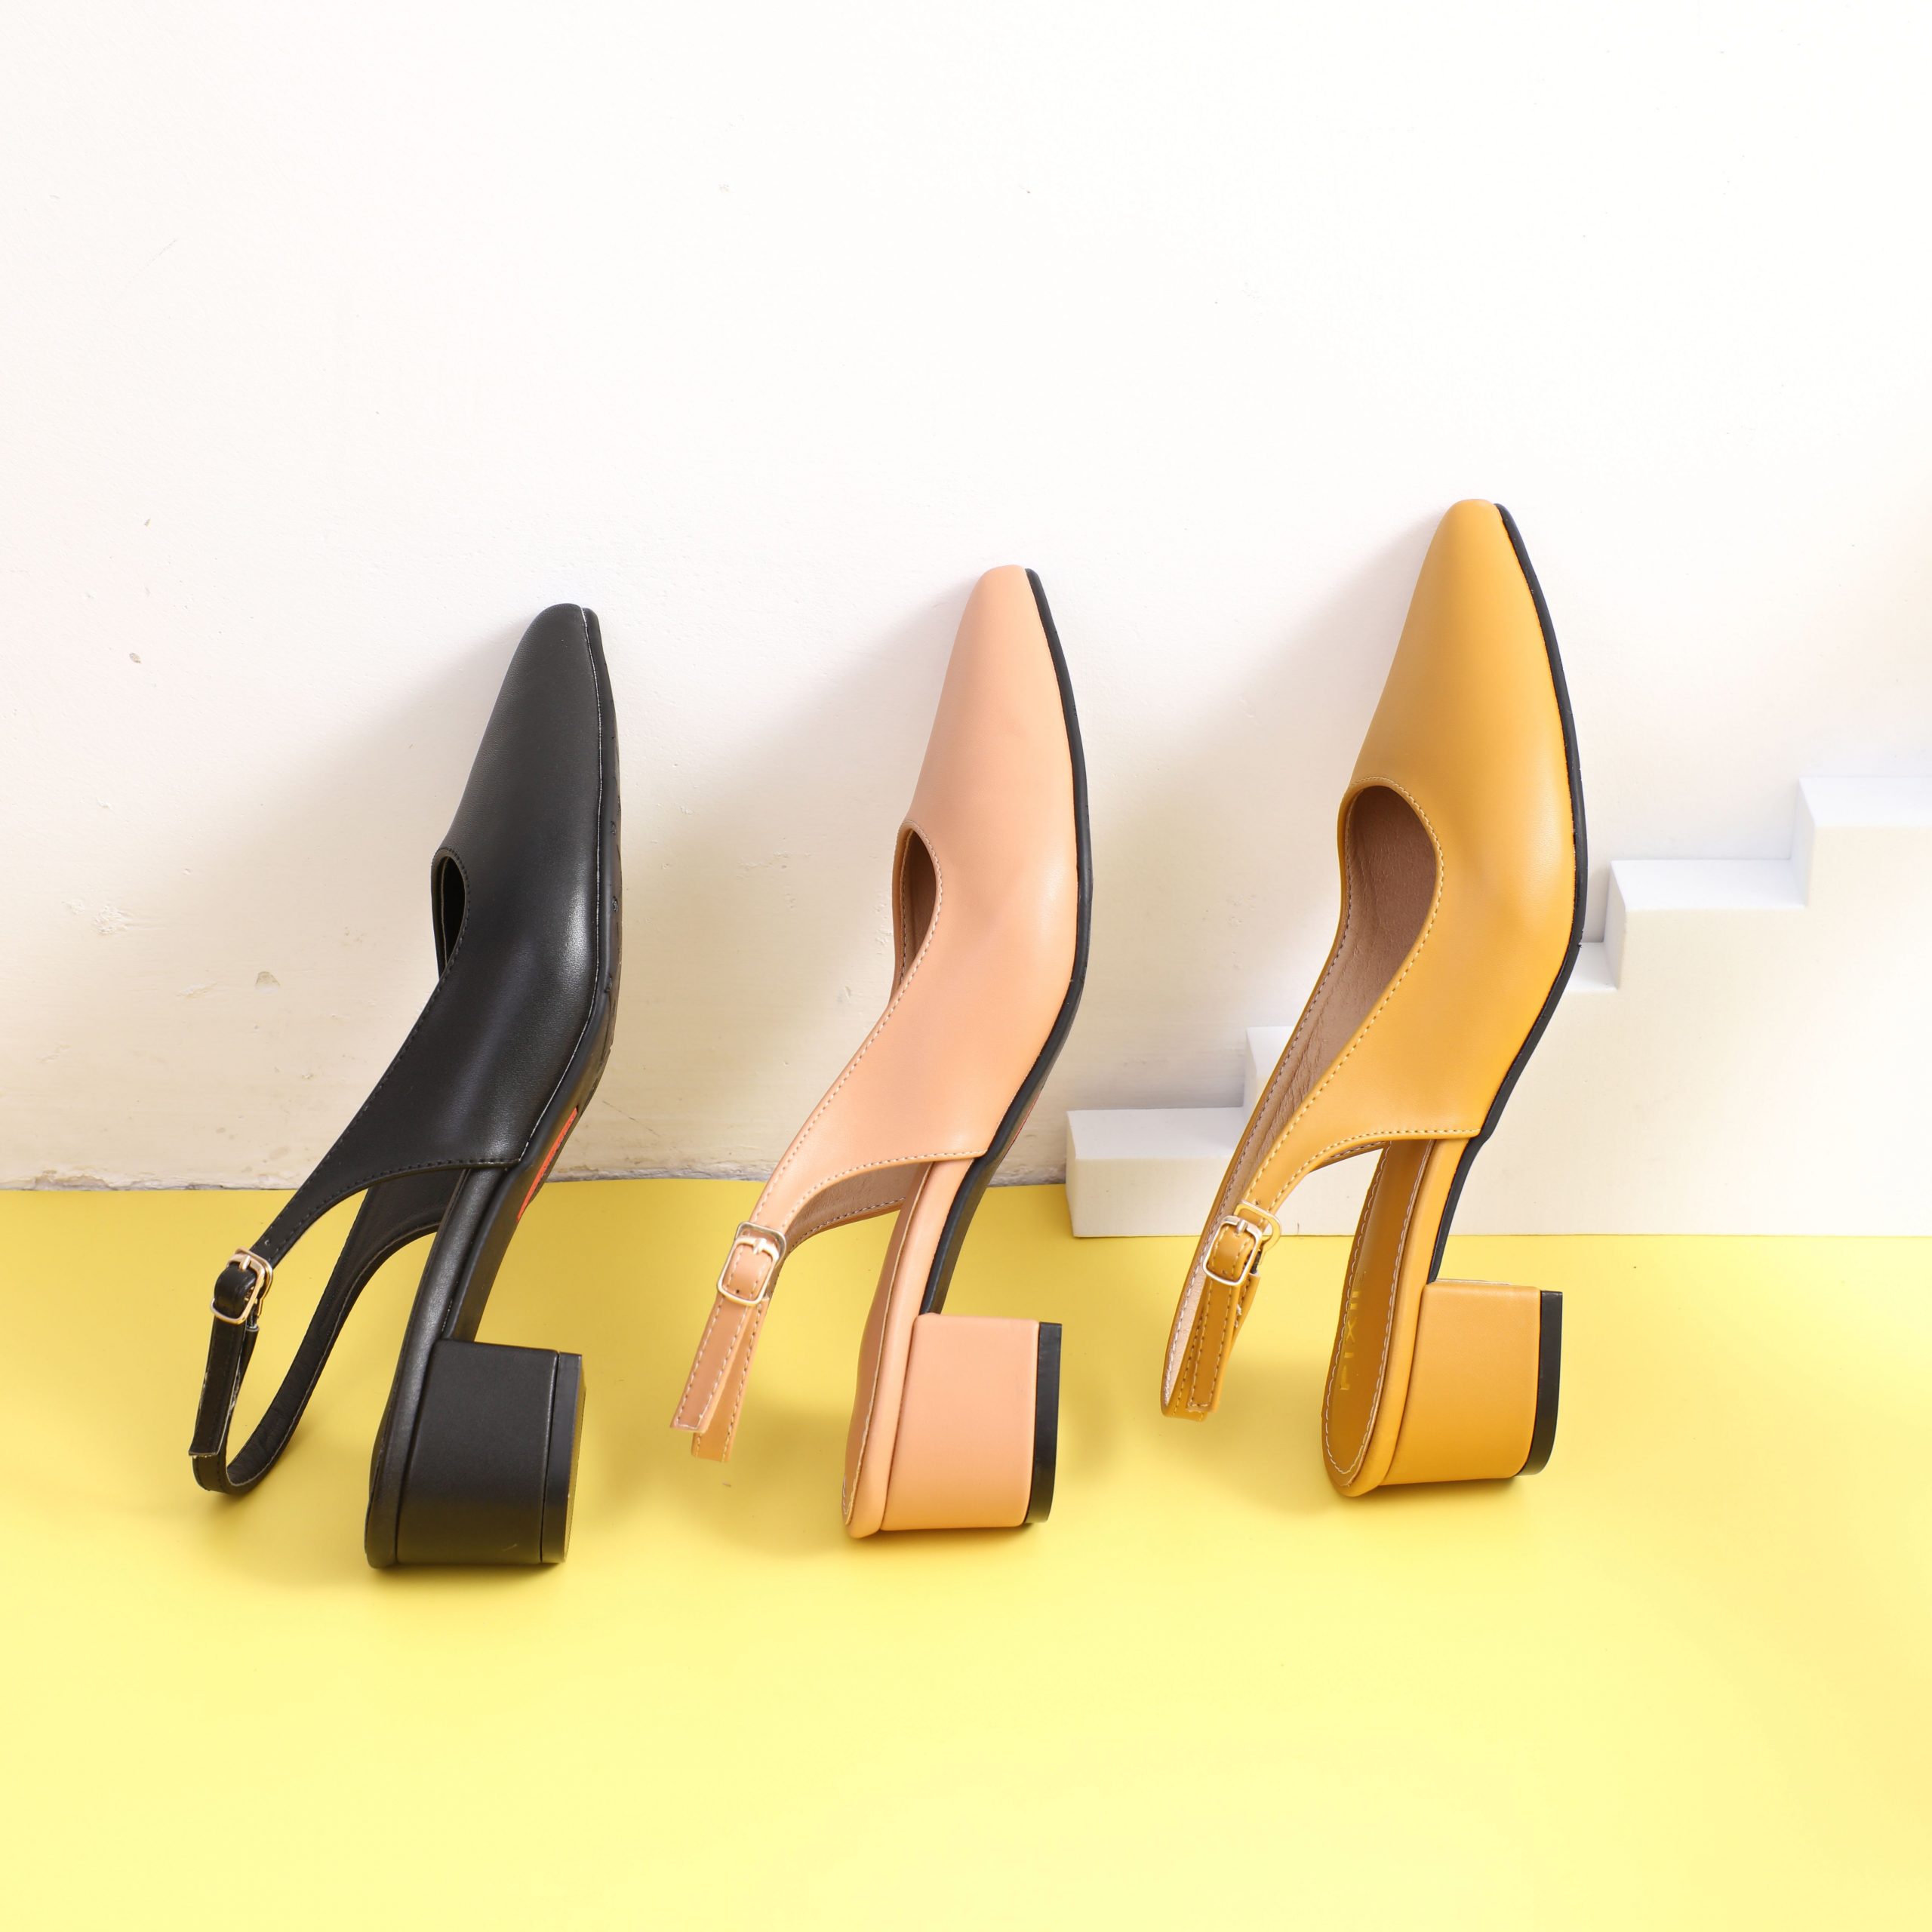 DILY - 4+ mẫu giày sandal nữ 3cm thanh lịch hot nhất mùa này tại DILY